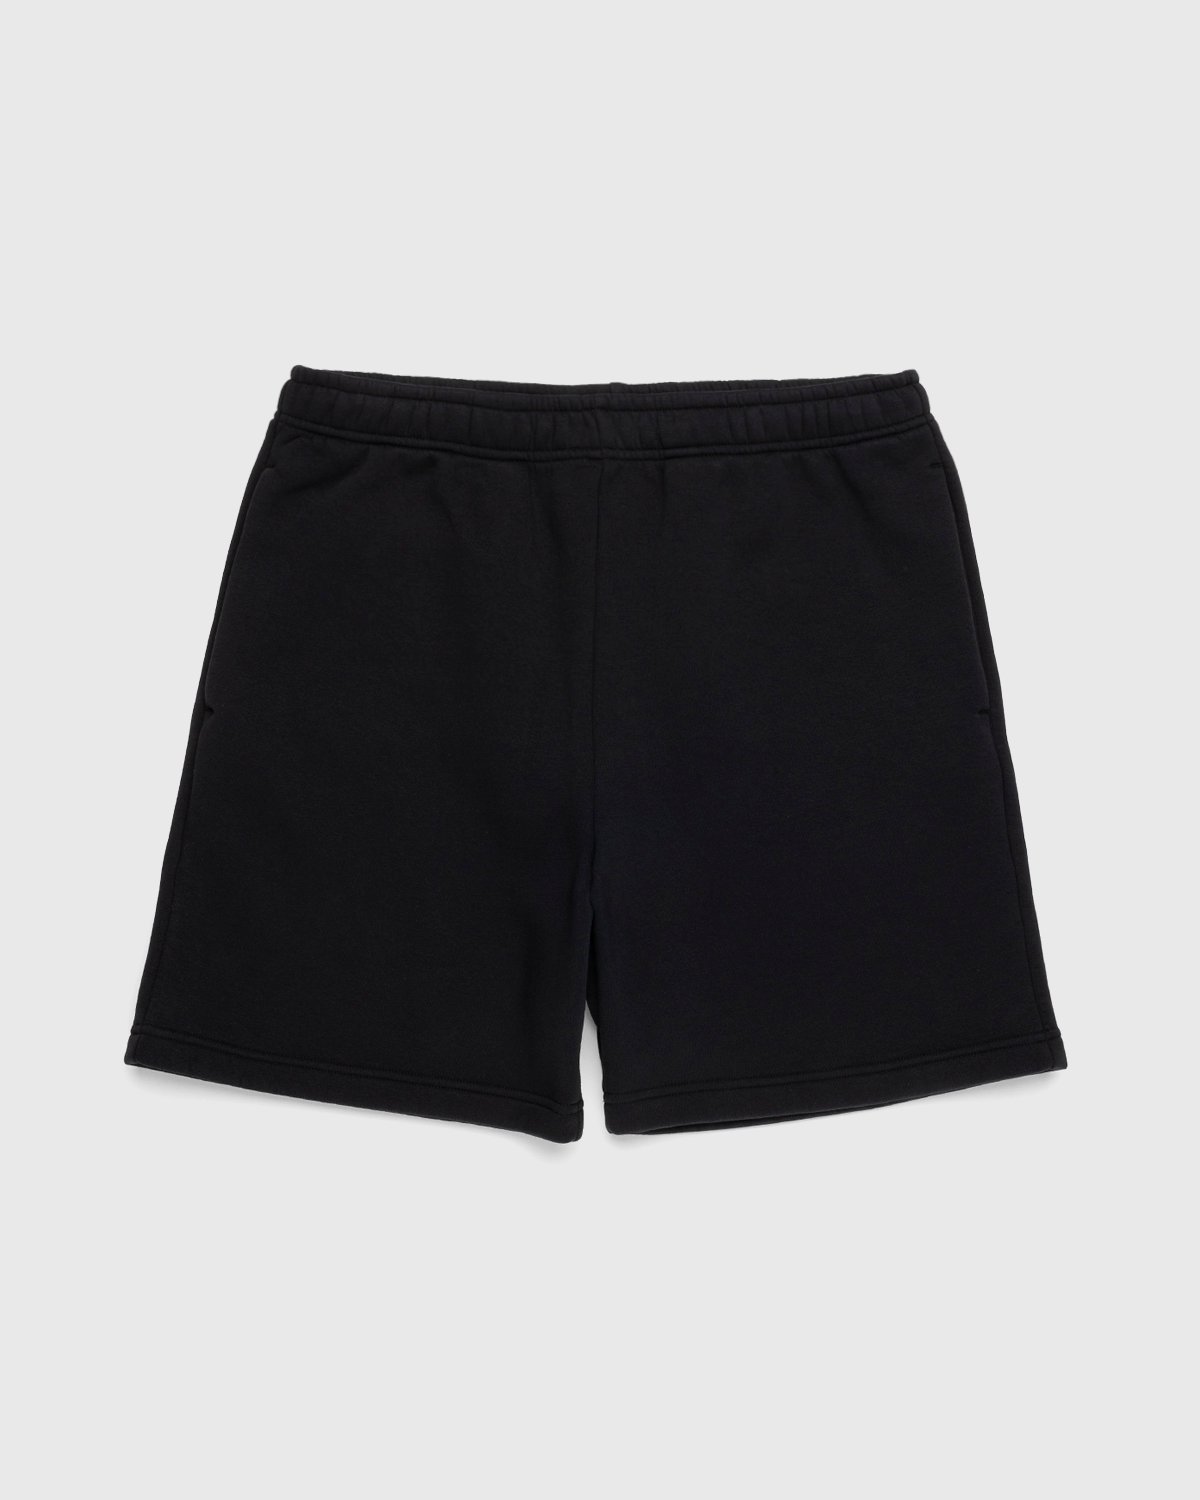 Acne Studios - Cotton Sweat Shorts Black - Clothing - Black - Image 1